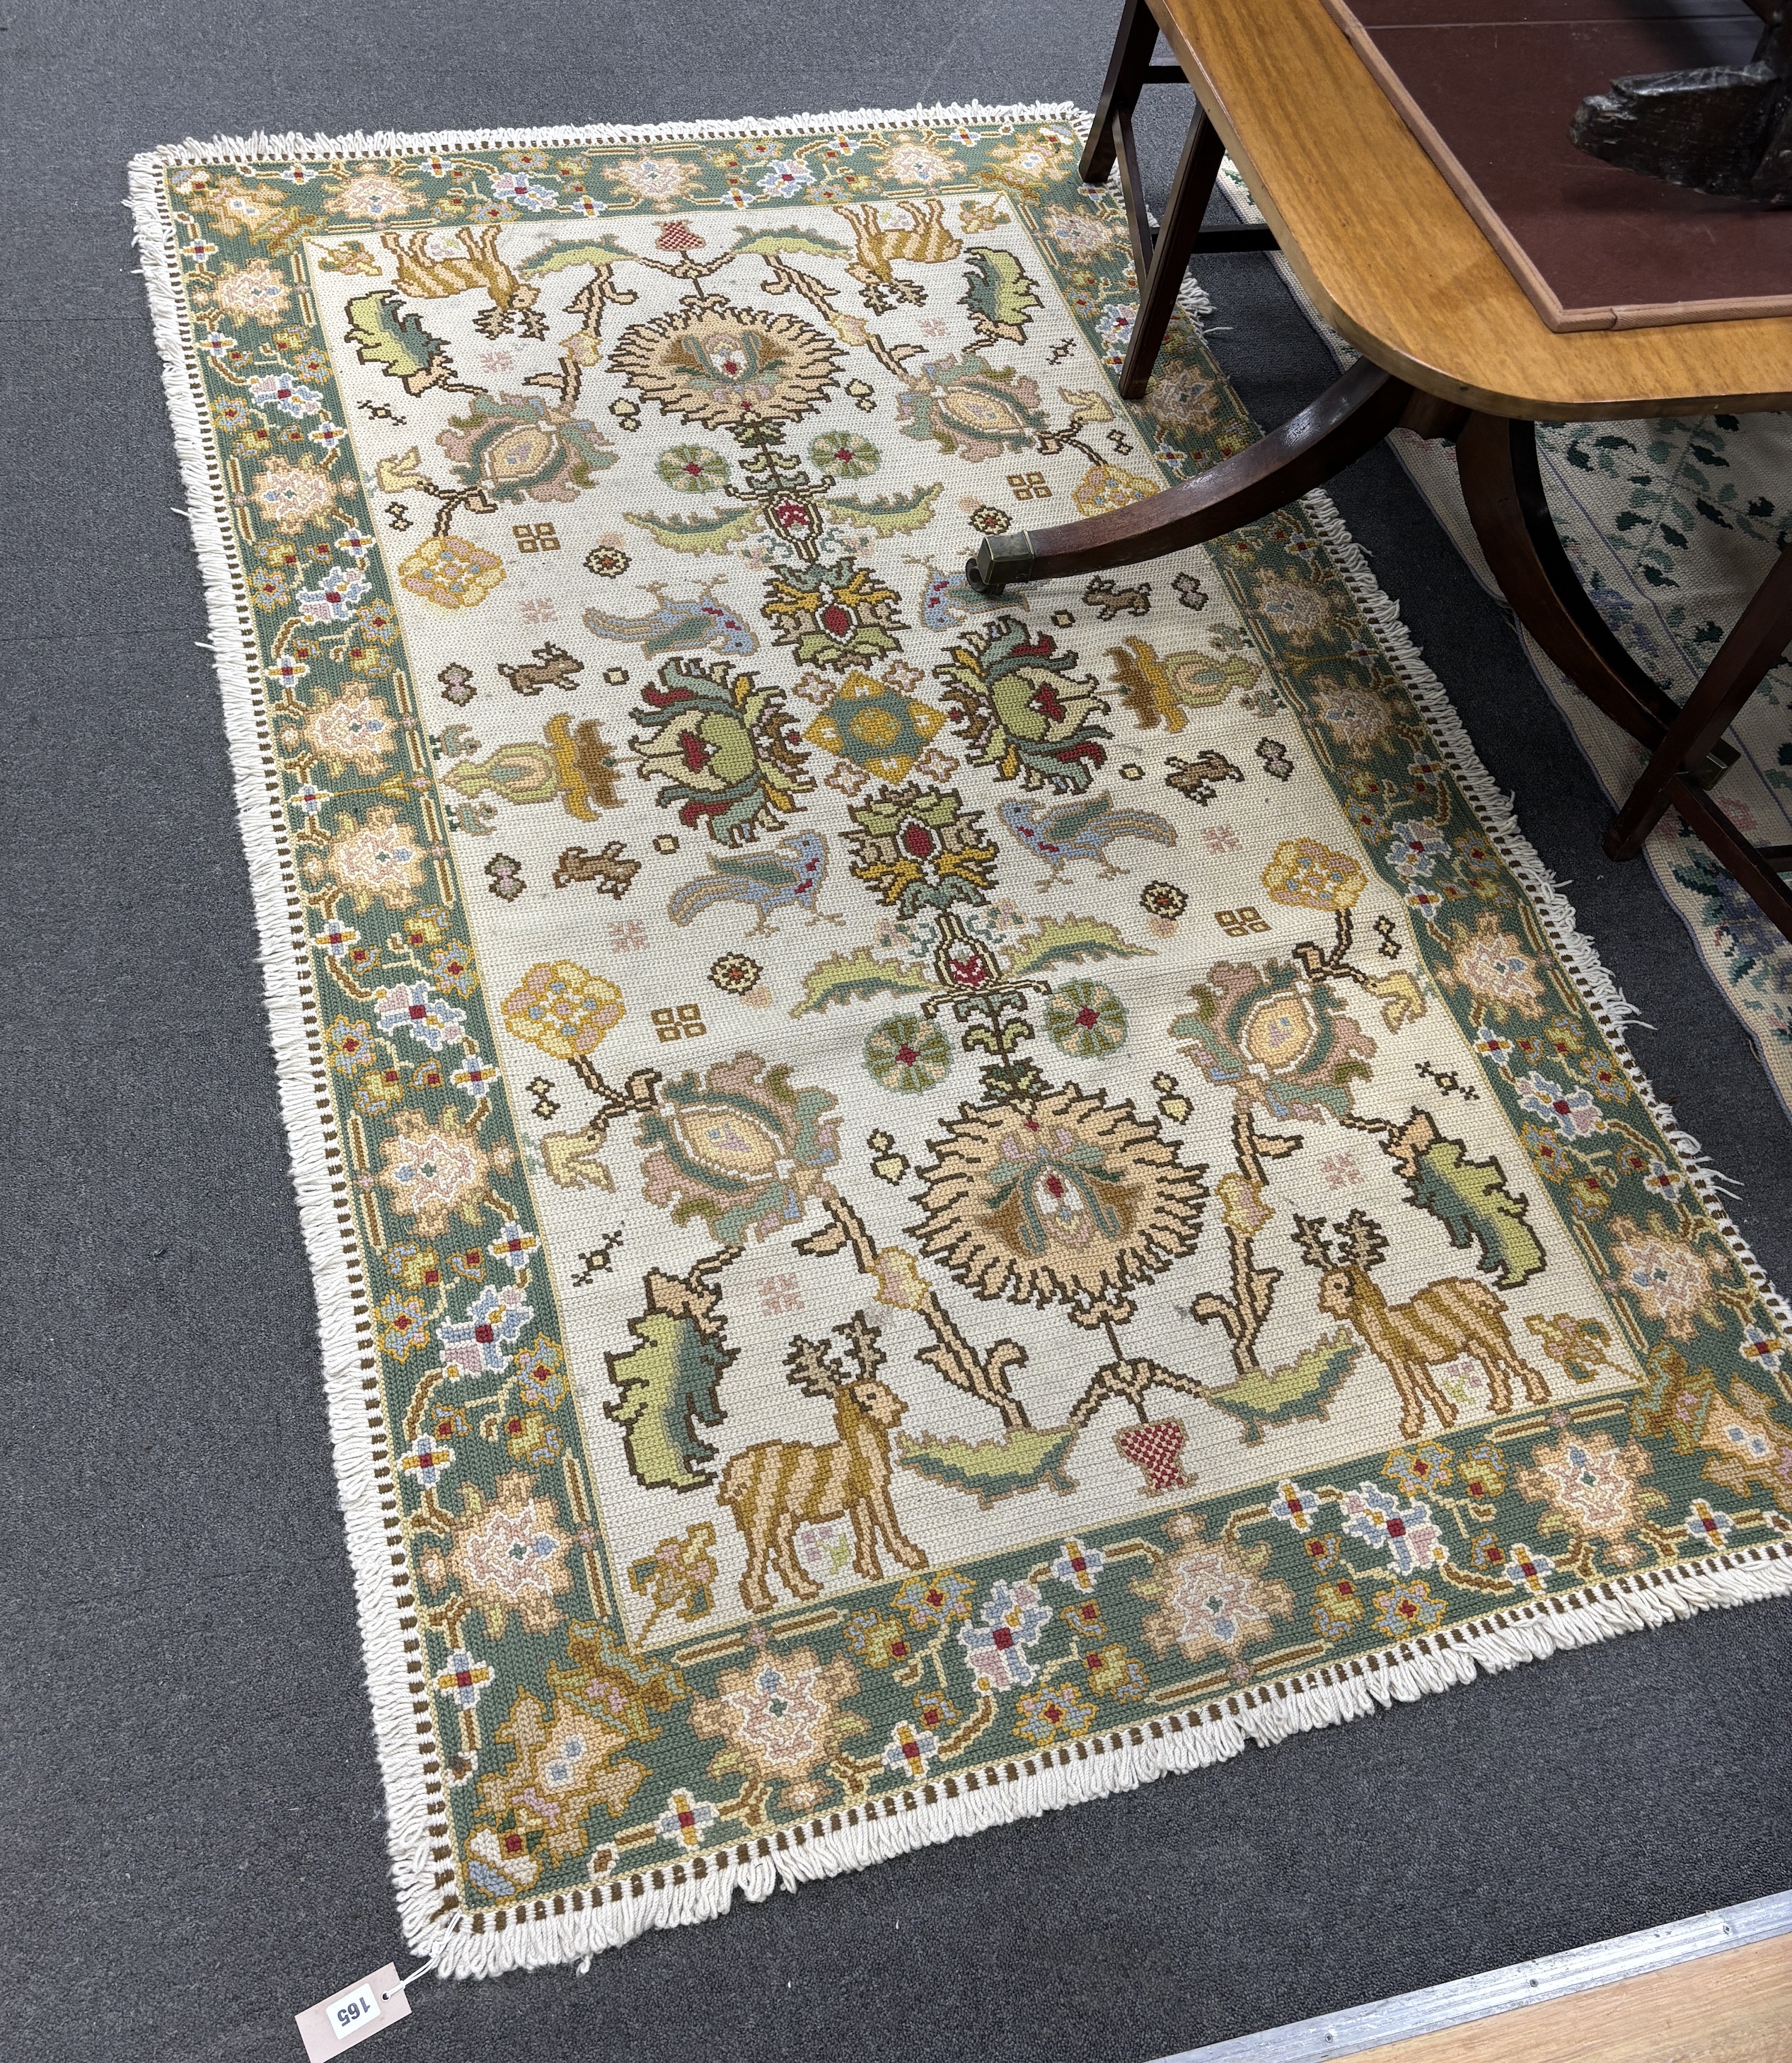 An Arilous rug, 210 x 130cm